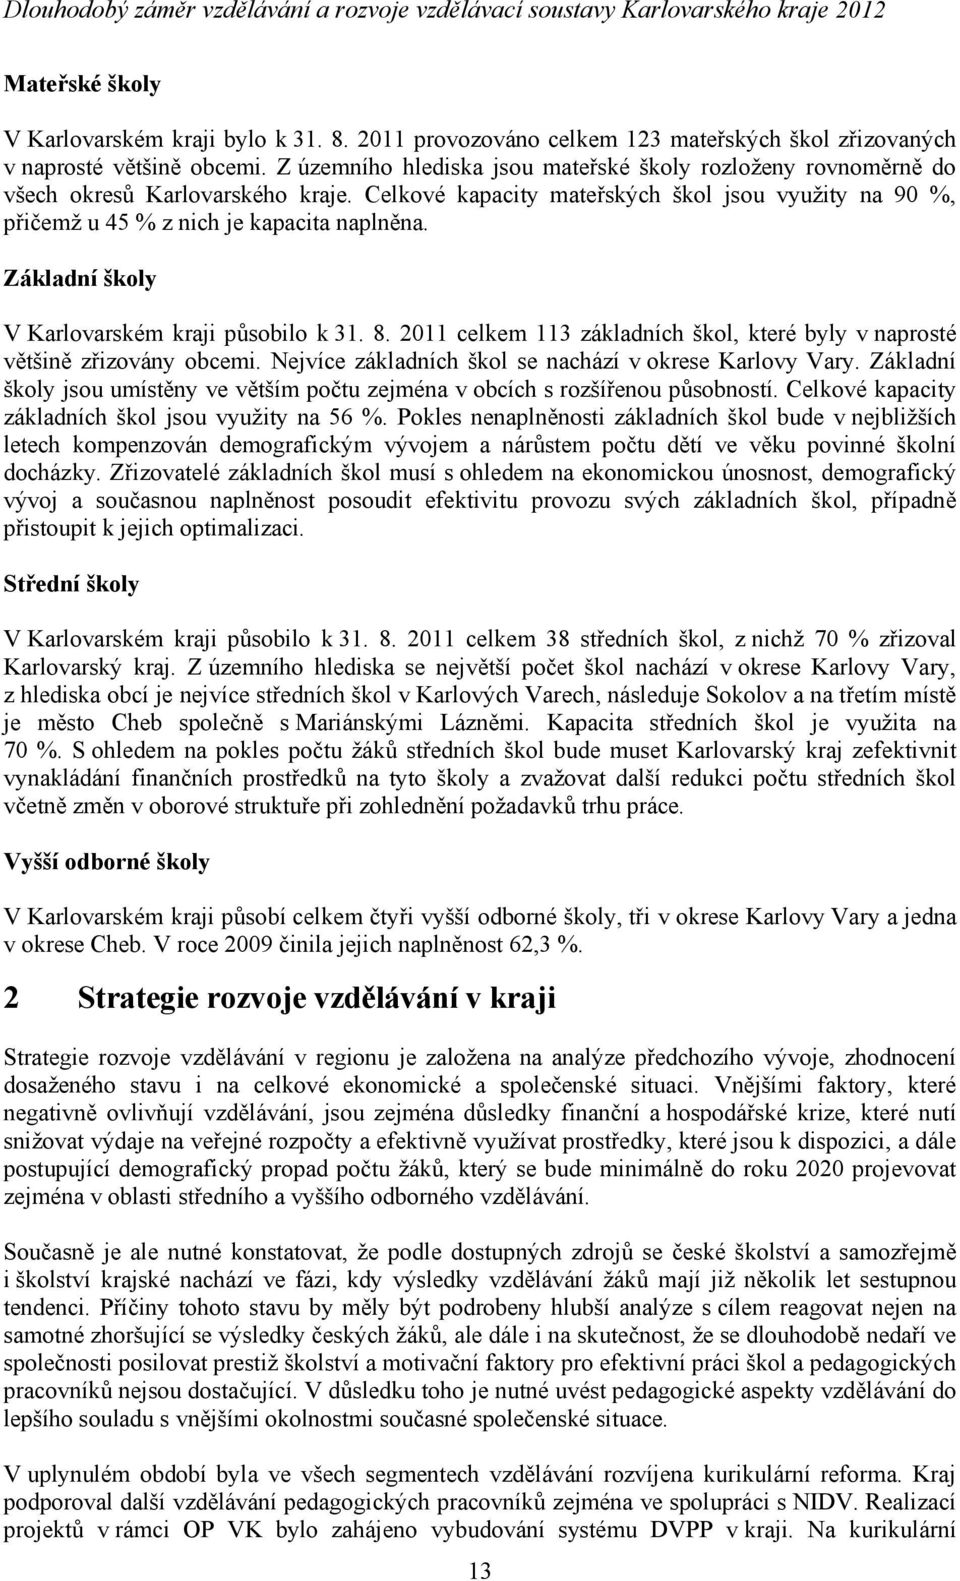 Základní y V Karlovarském i působilo k 31. 8. 2011 celkem 113 základních, které byly v naprosté většině zřizovány obcemi. Nejvíce základních se nachází v okrese Karlovy Vary.